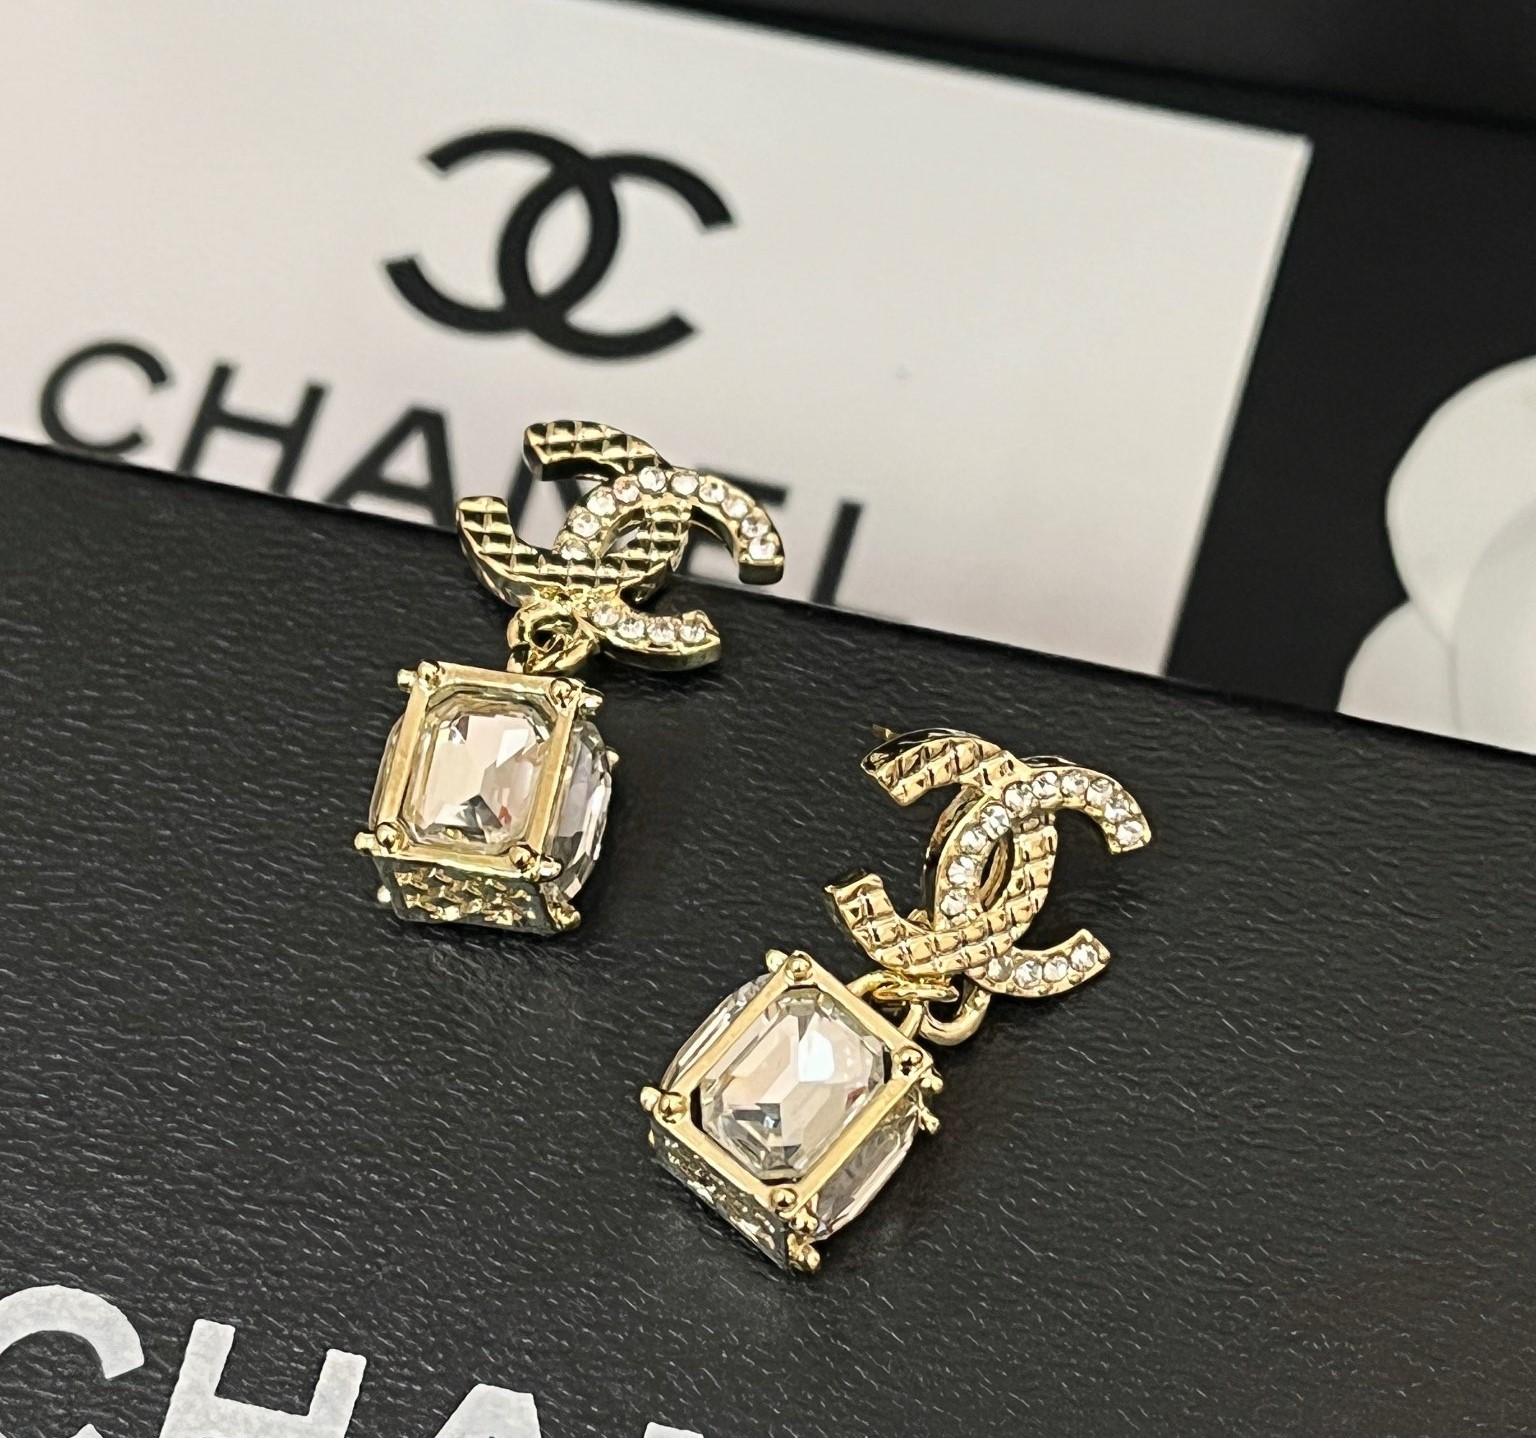 A954 Chanel earrings